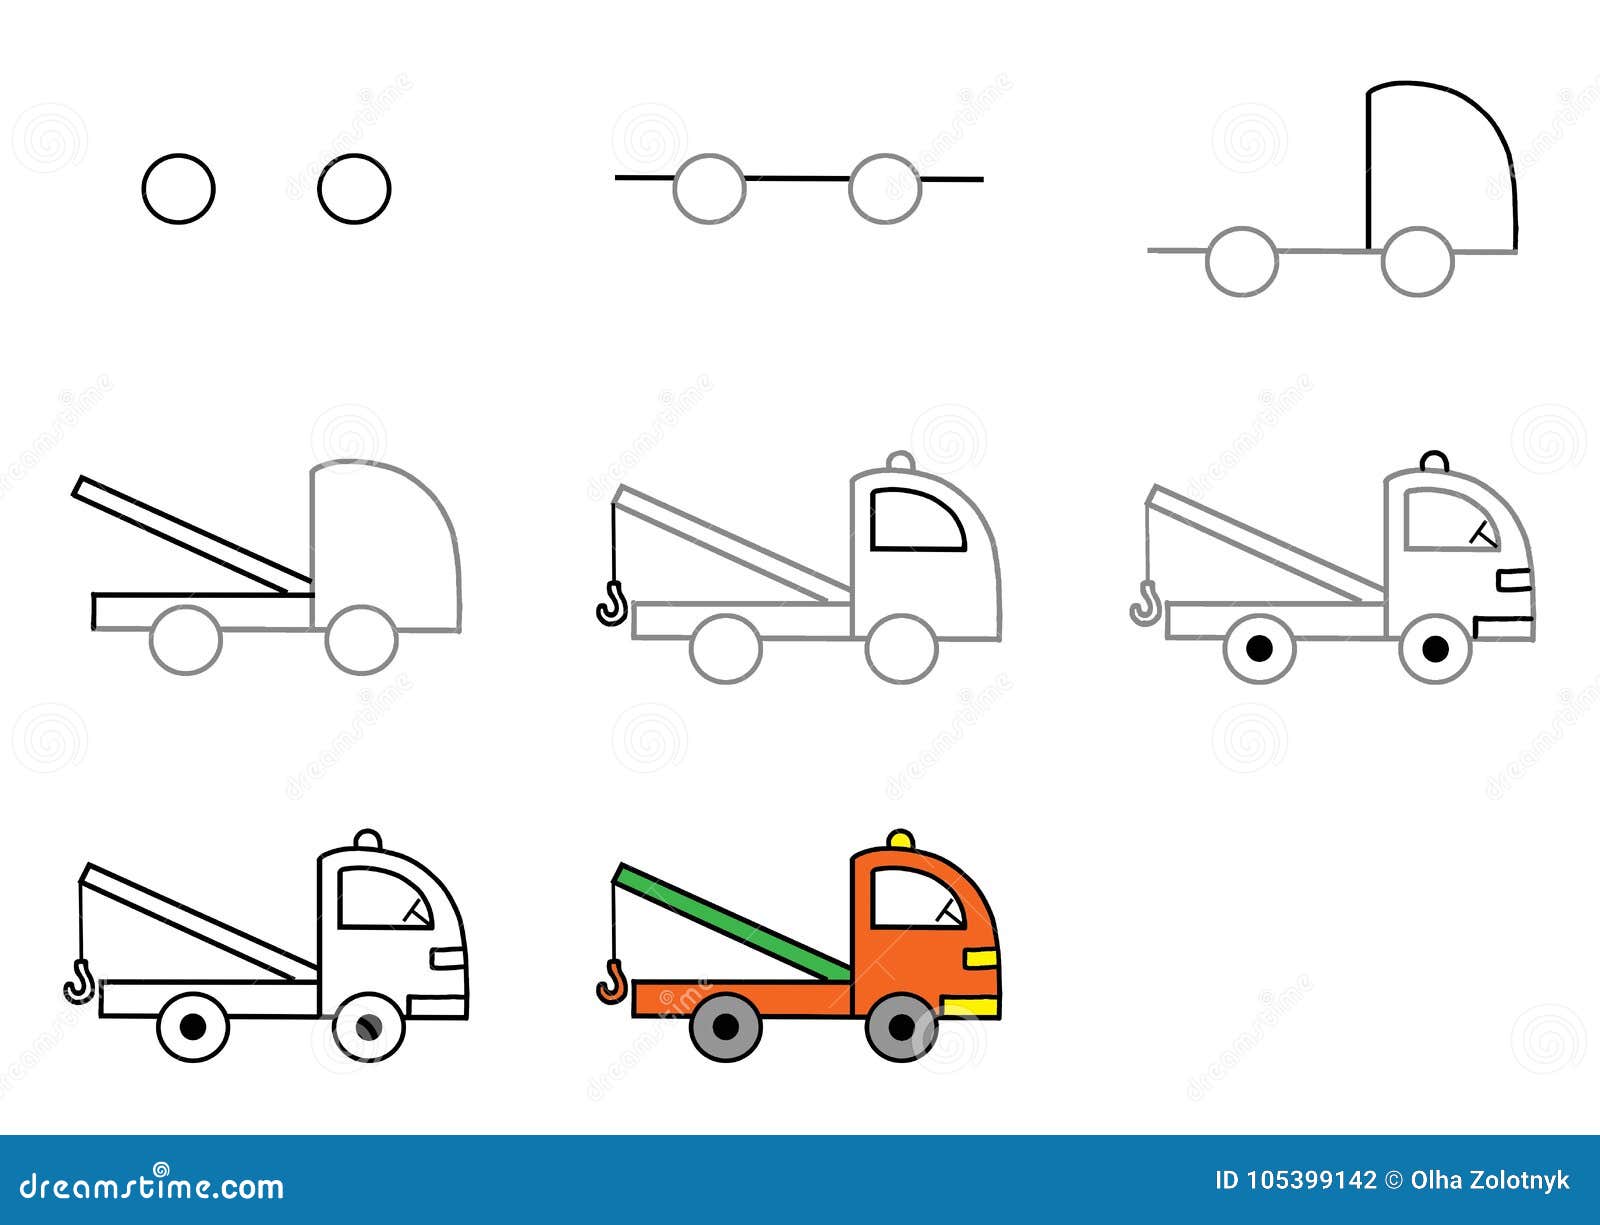 Схема рисования грузовой машины в средней группе